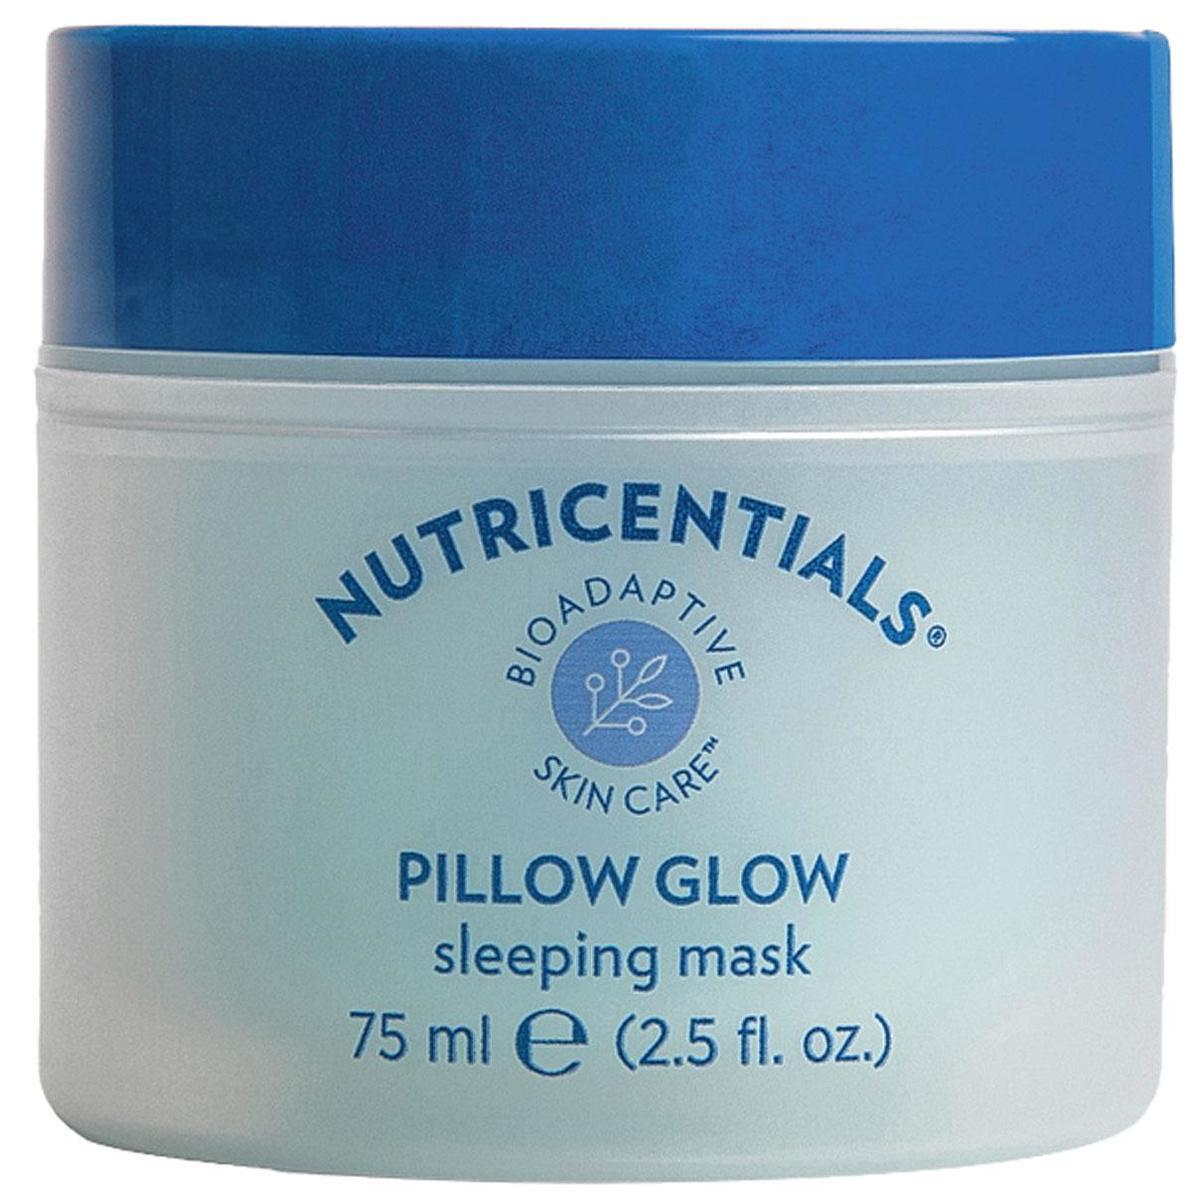 Zeg dat verkreukelde gezicht en die kussenafdruk in de ochtend maar vaarwel. Biologisch adaptief slaapmasker Pillow Glow van Nutricentials Nu Skin. 40,95 euro voor 75 ml, nuskin.com